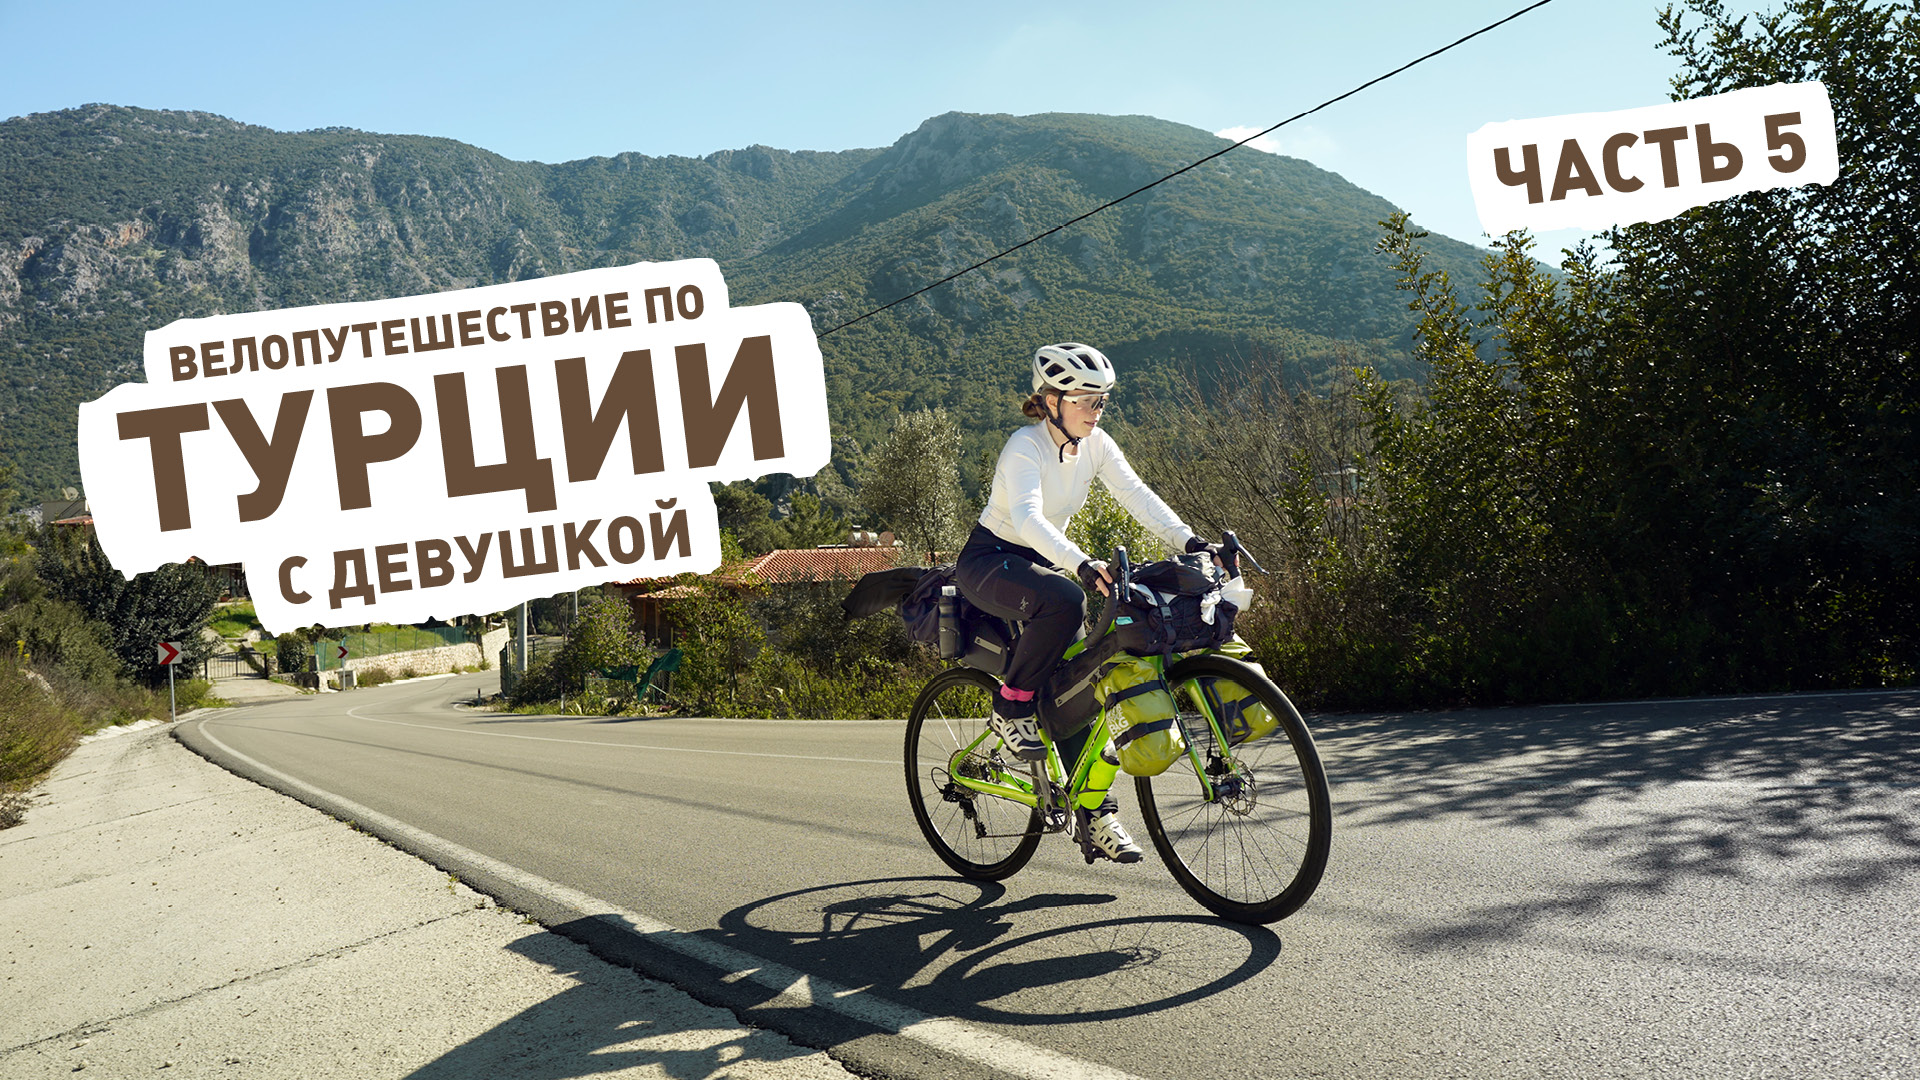 Турция на велосипеде ep5 — Кемер, Idyros, Фаселис, Текирова и пляж Клеопатры